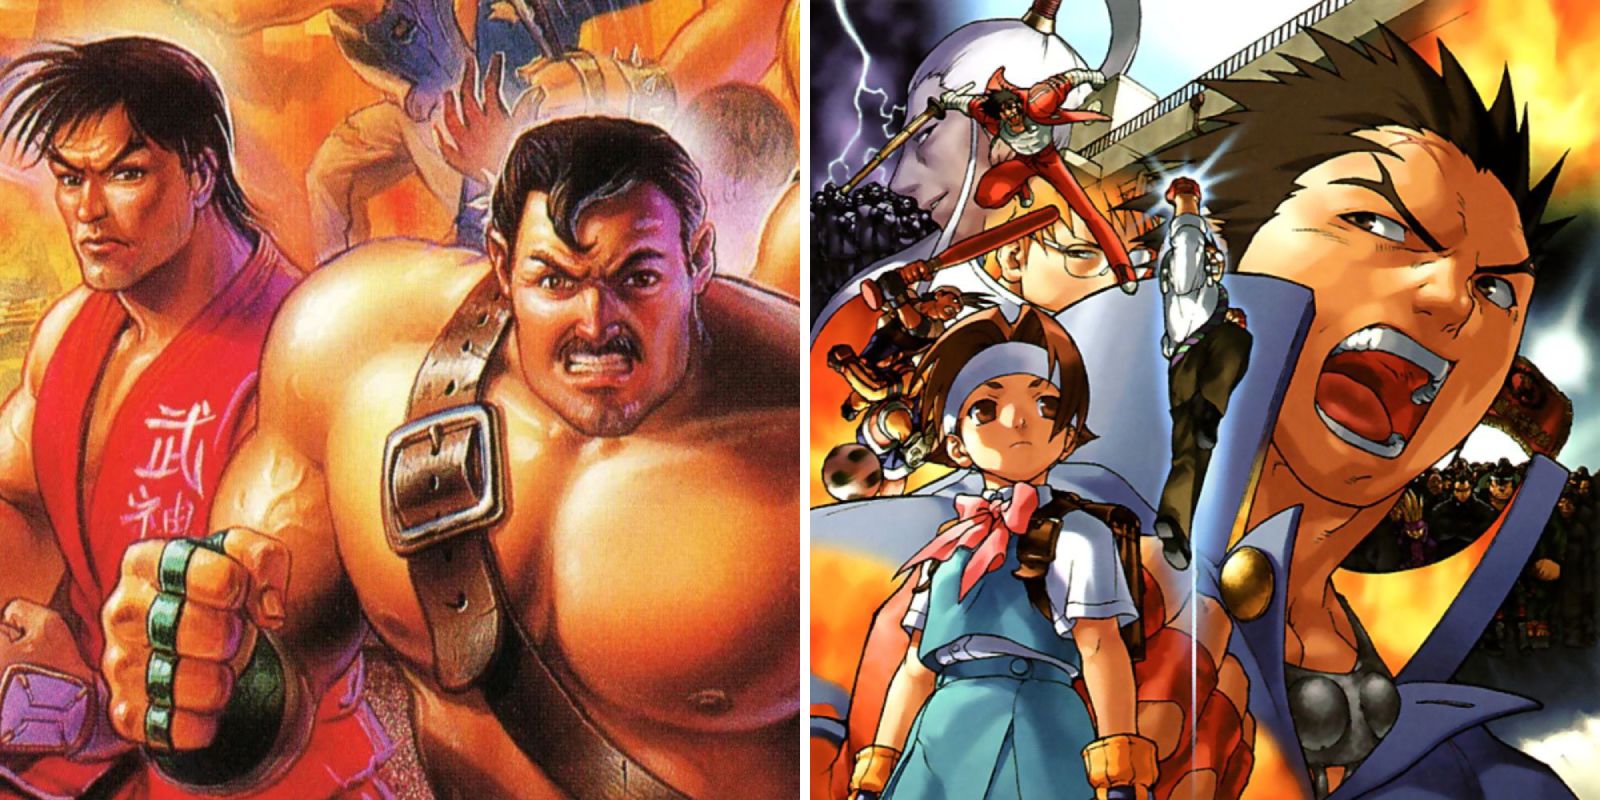 Imagen compartida con Guy y Mike Haggar en la portada de Final Fight-3, así como ilustraciones con personajes de Rival Schools United by Fate, incluidos Sakura y Batsu de Street Fighter.